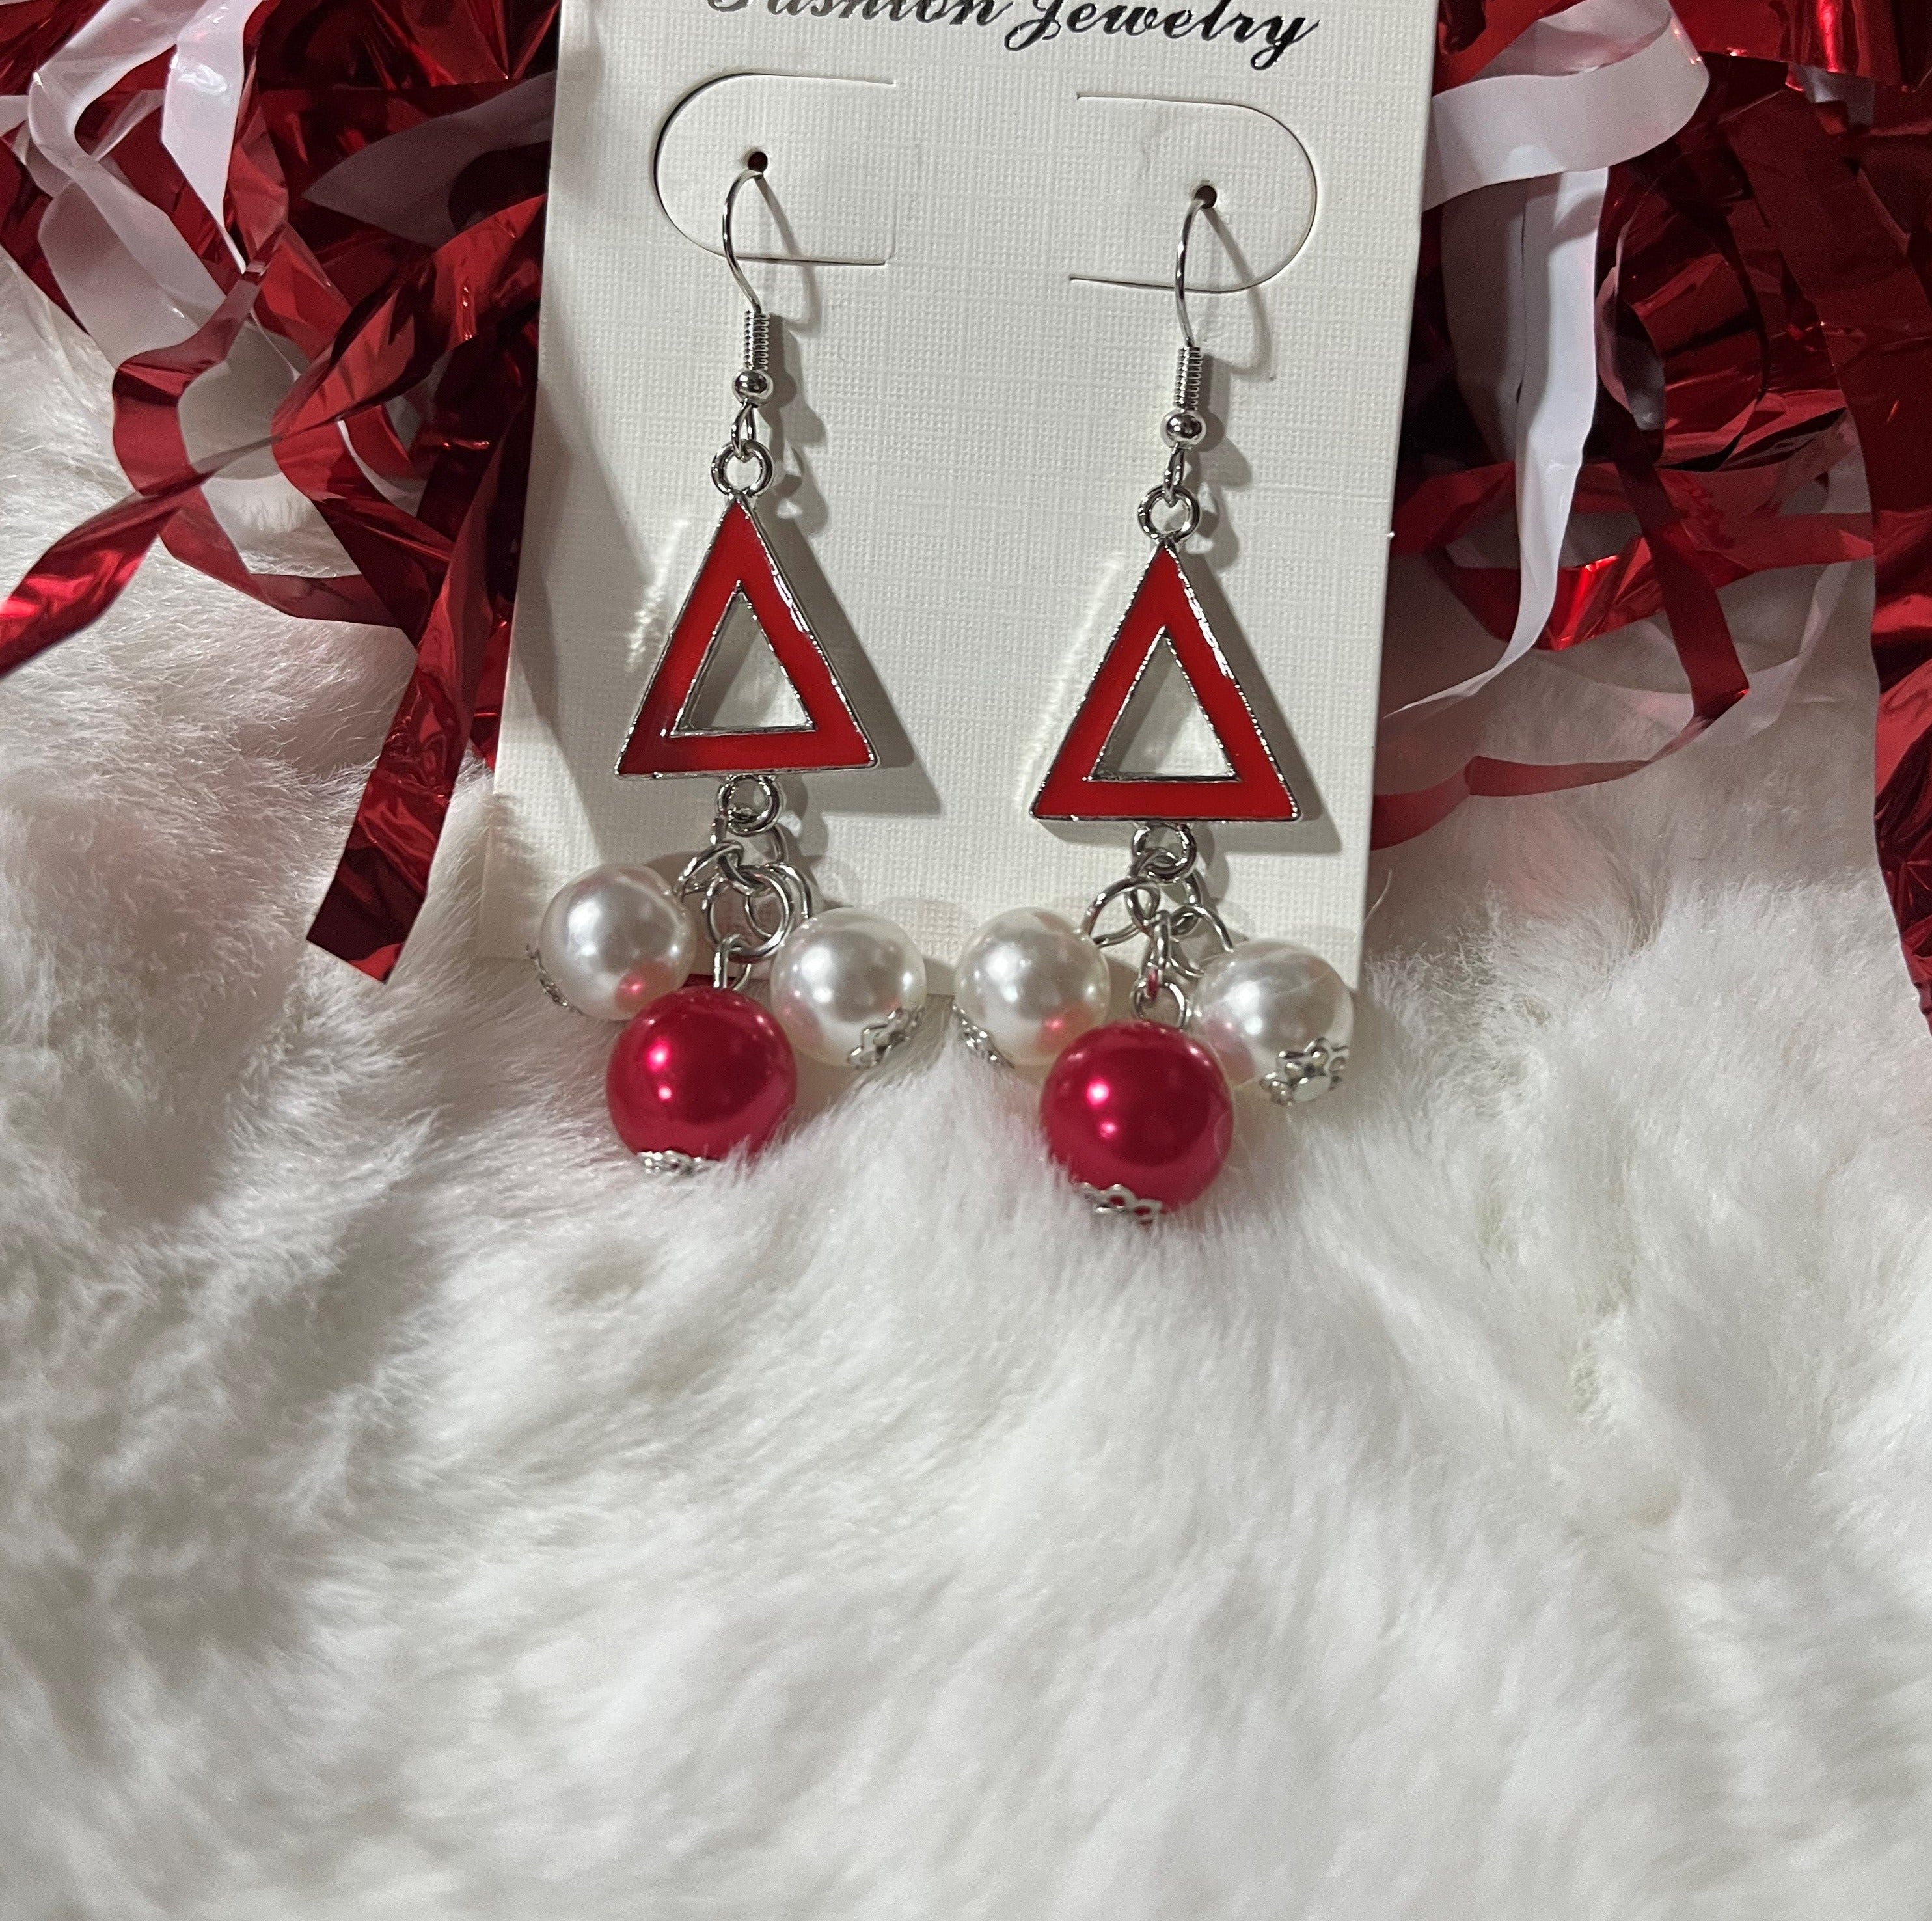 Earrings Crimson & Cream DST Inspired